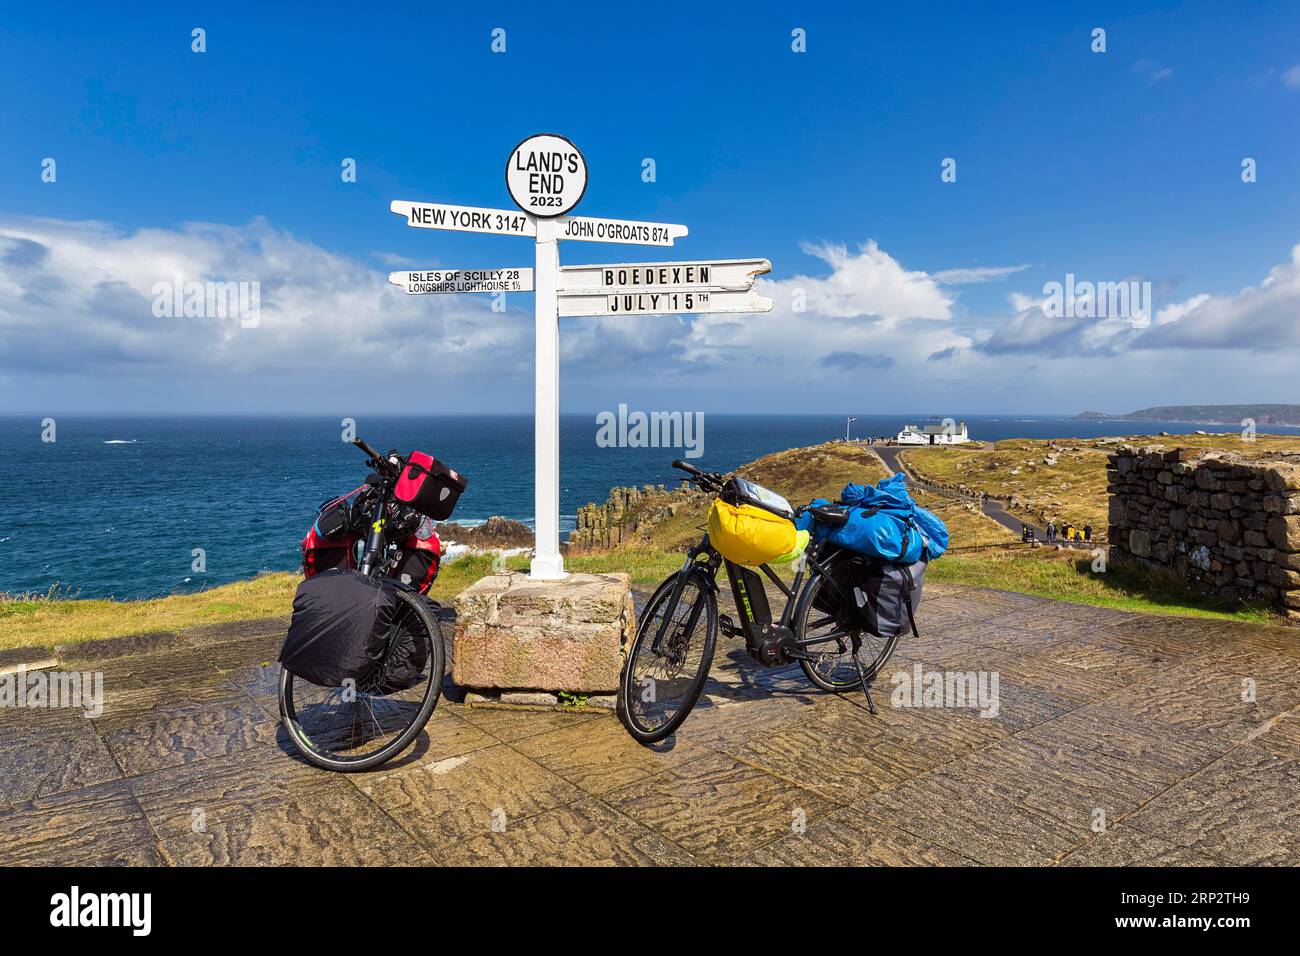 Deux e-bikes au célèbre panneau indiquant New York, John o' Groats et les îles Scilly, LANd's End, Lands End, Penzance, Peninsula Penwith, Cornwall Banque D'Images